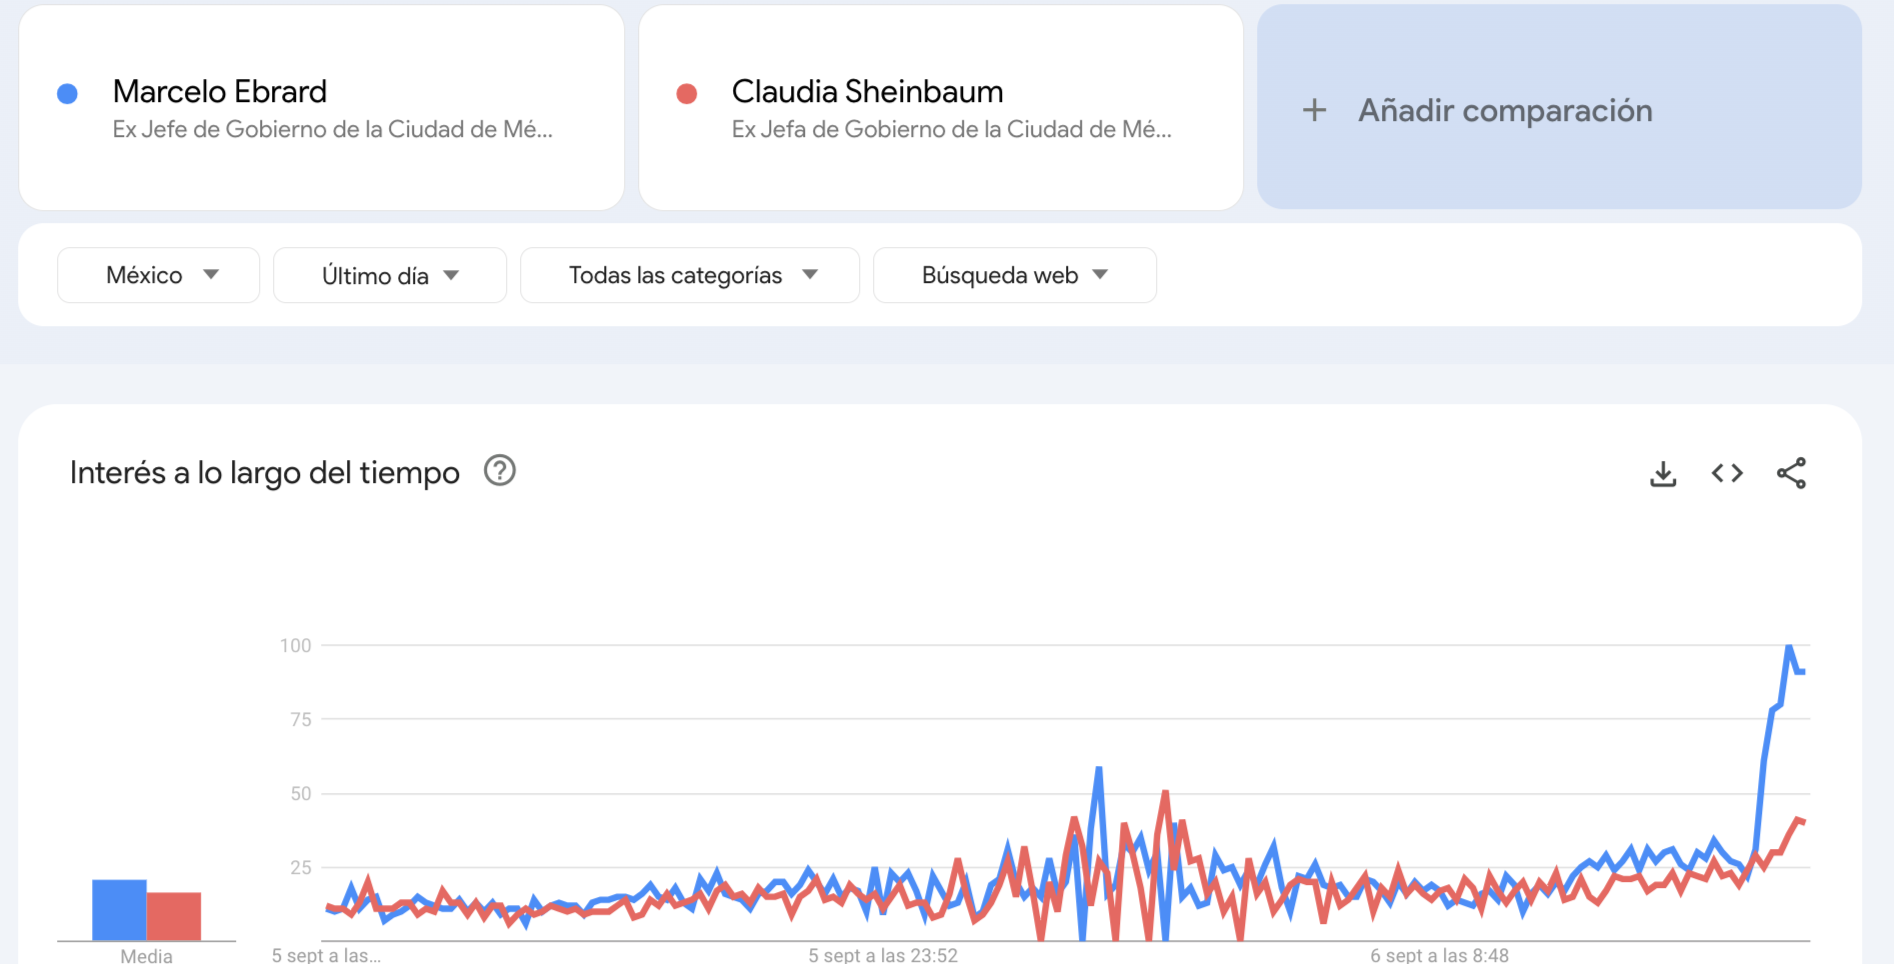 Una revisión a la data de Google Trends revela un incremento considerable en búsquedas relacionadas con Marcelo Ebrard